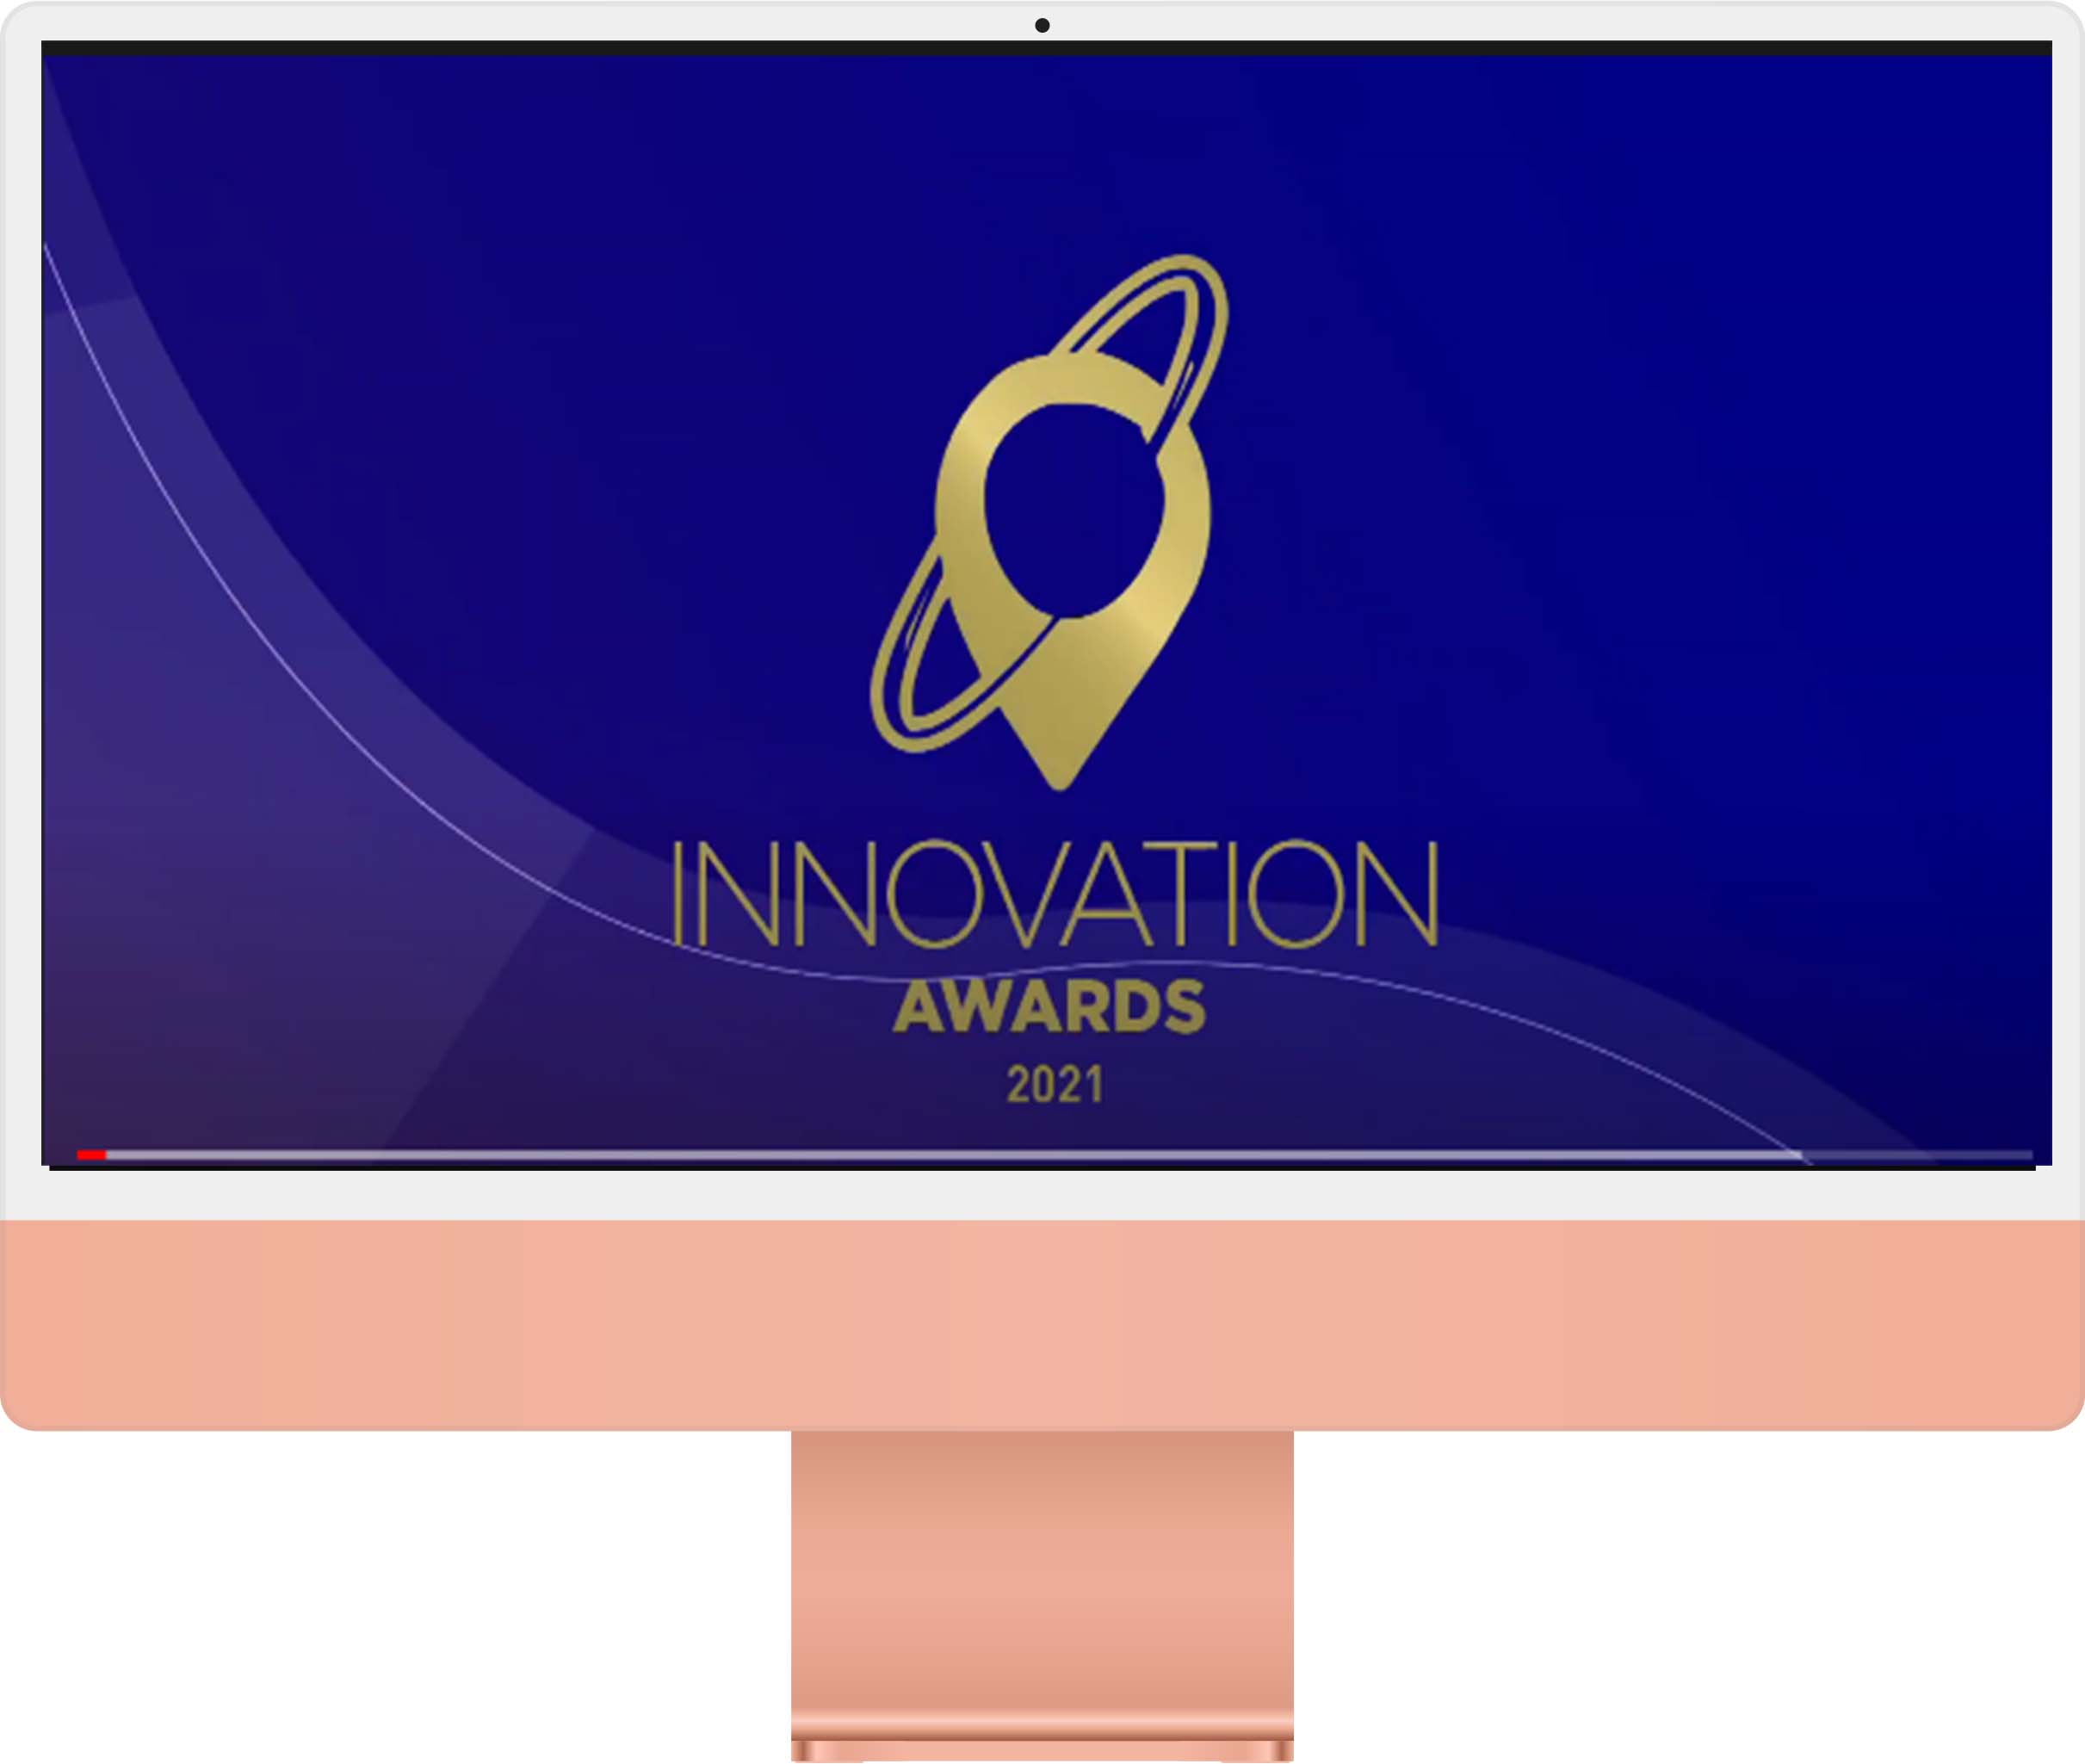 Organik Kimya Innovation Awards 2021 Winner Video